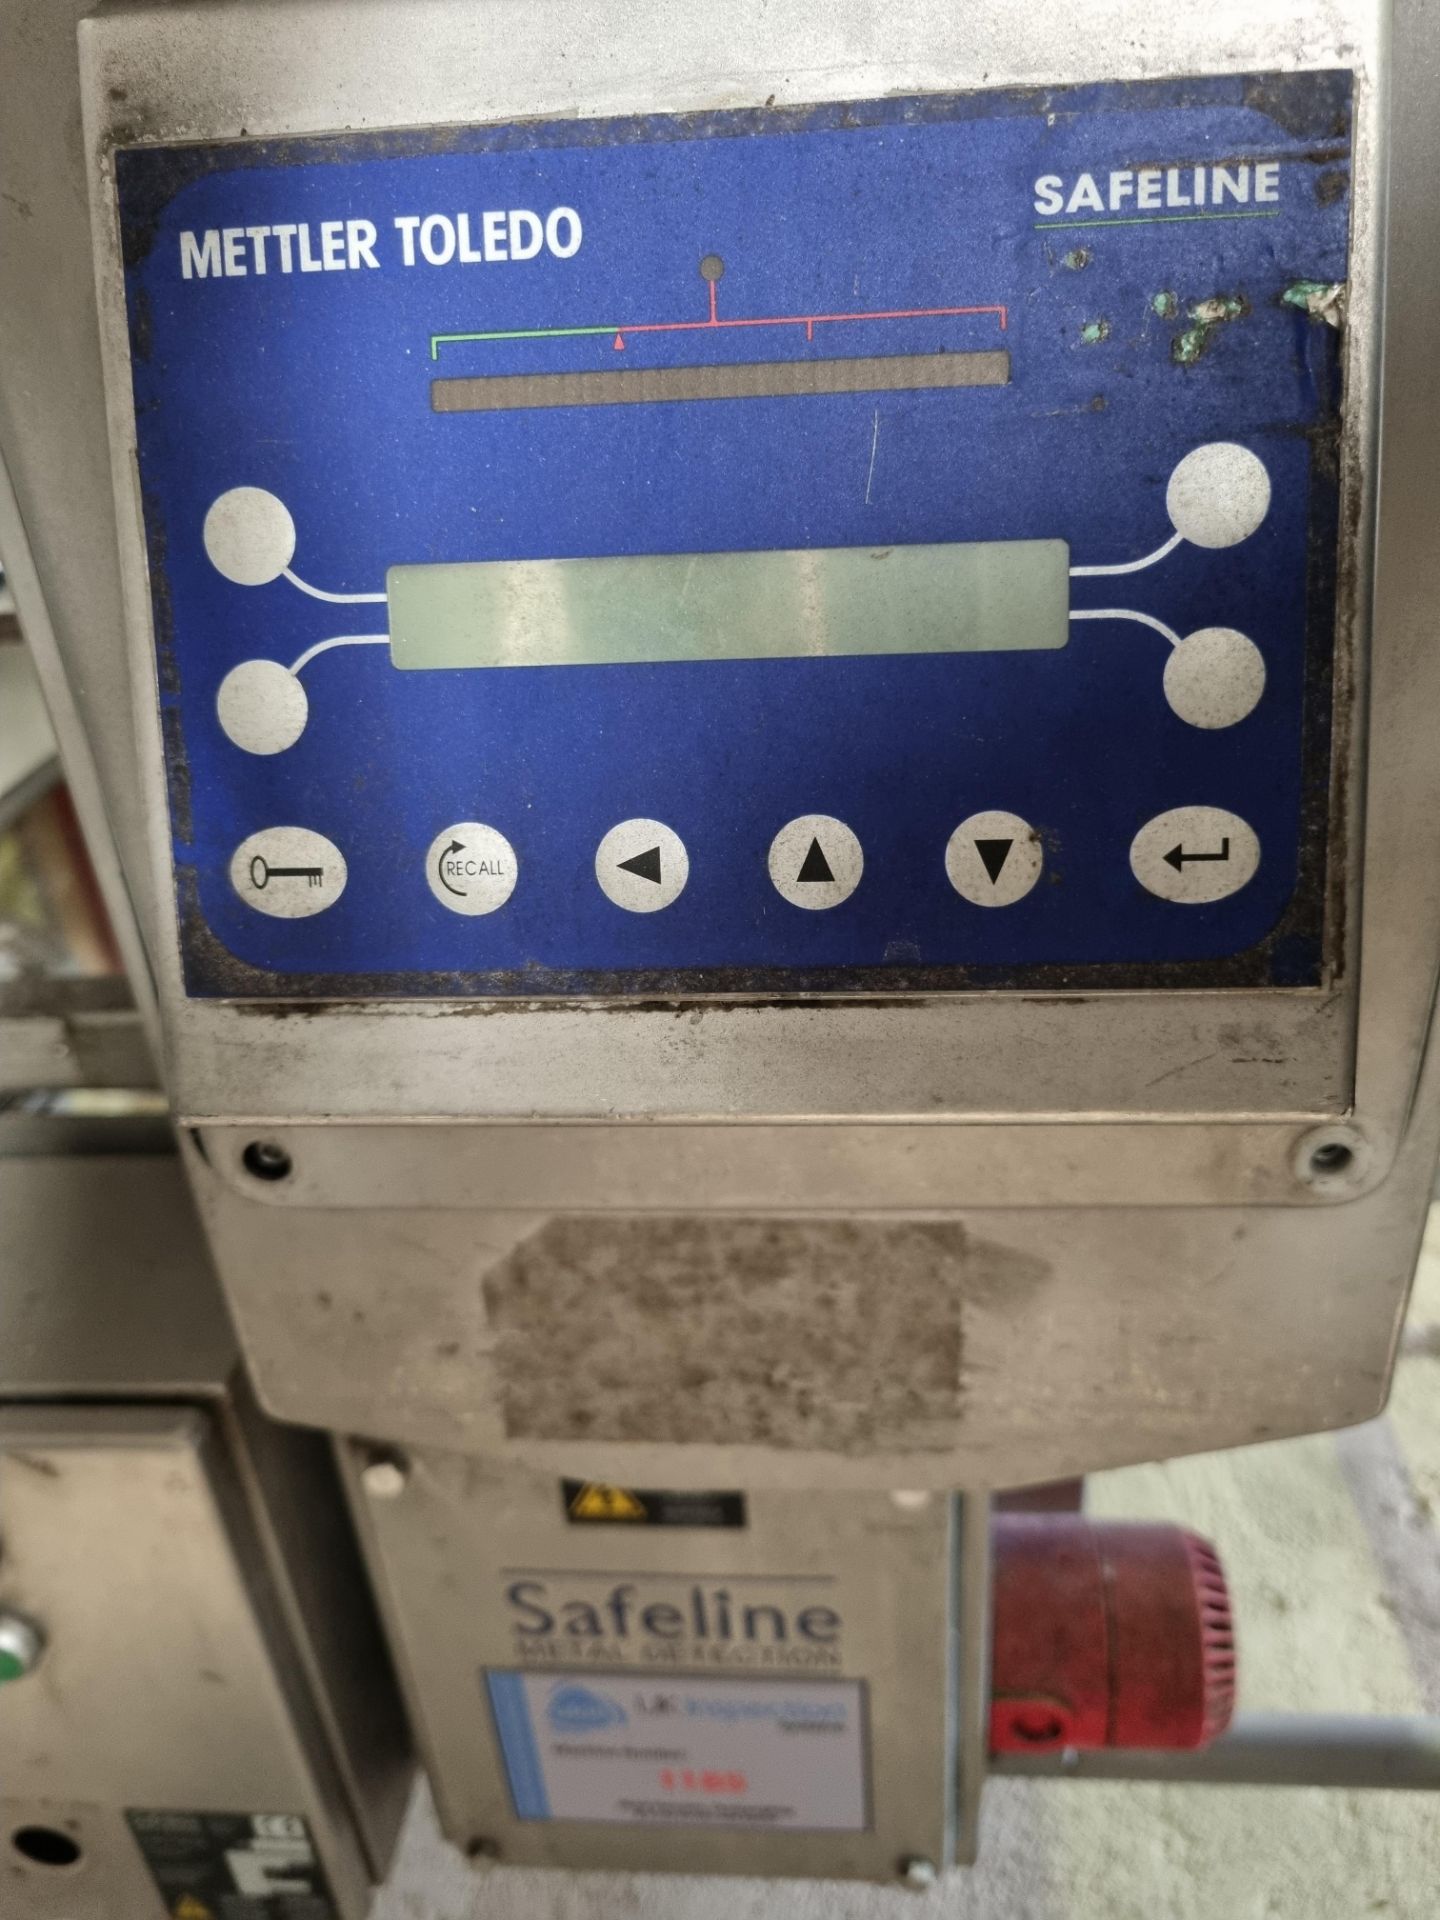 Mettler Toledo Safeline Metal Detector. Certus. 550 x 170 mm Aperture. 1500 mm conveyor 500 belt. - Image 2 of 3